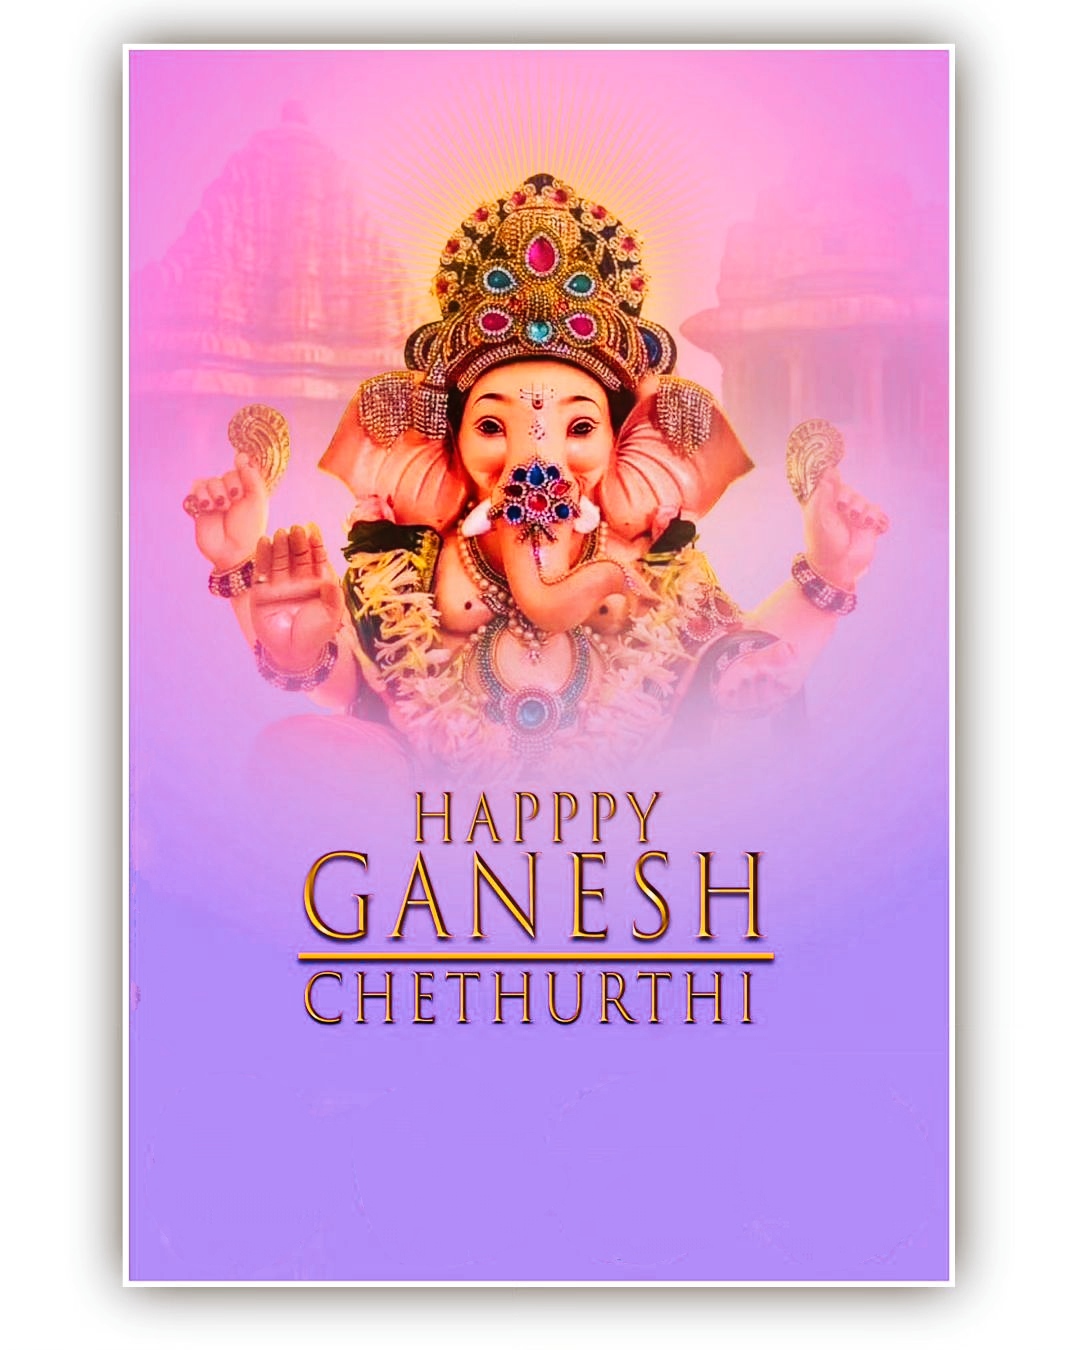 Download Ganesh Chaturthi Images